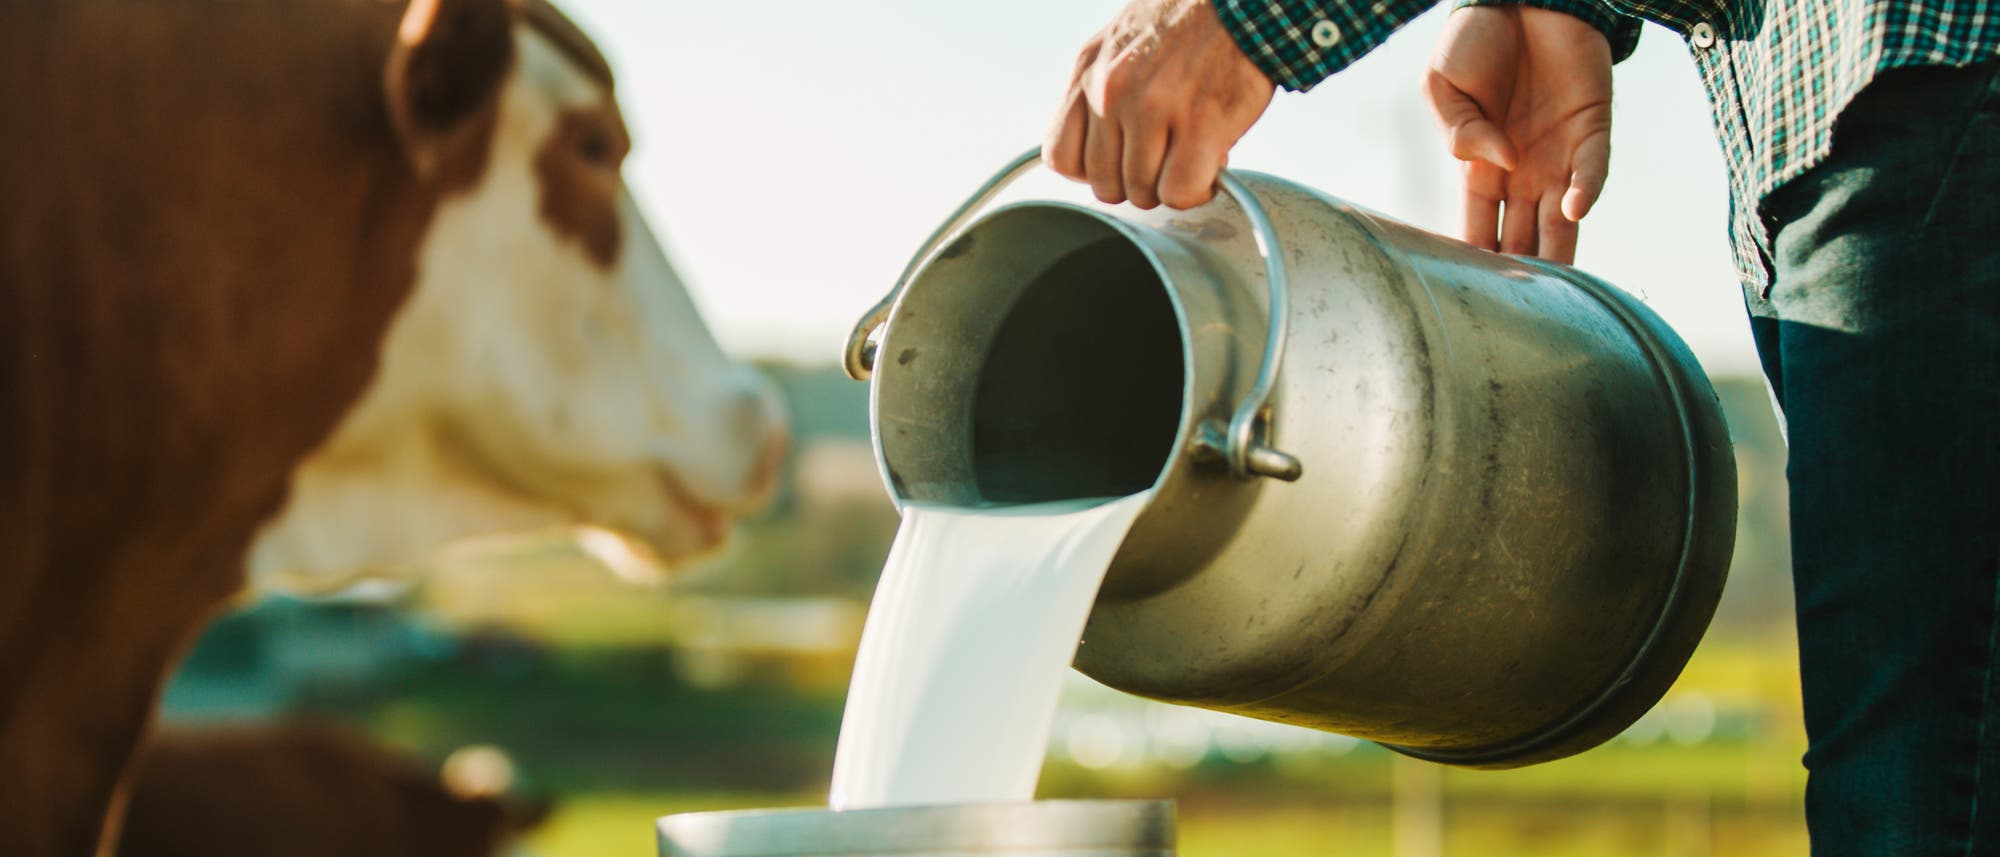 Ein Landwirt gießt Milch in einen Kanister.